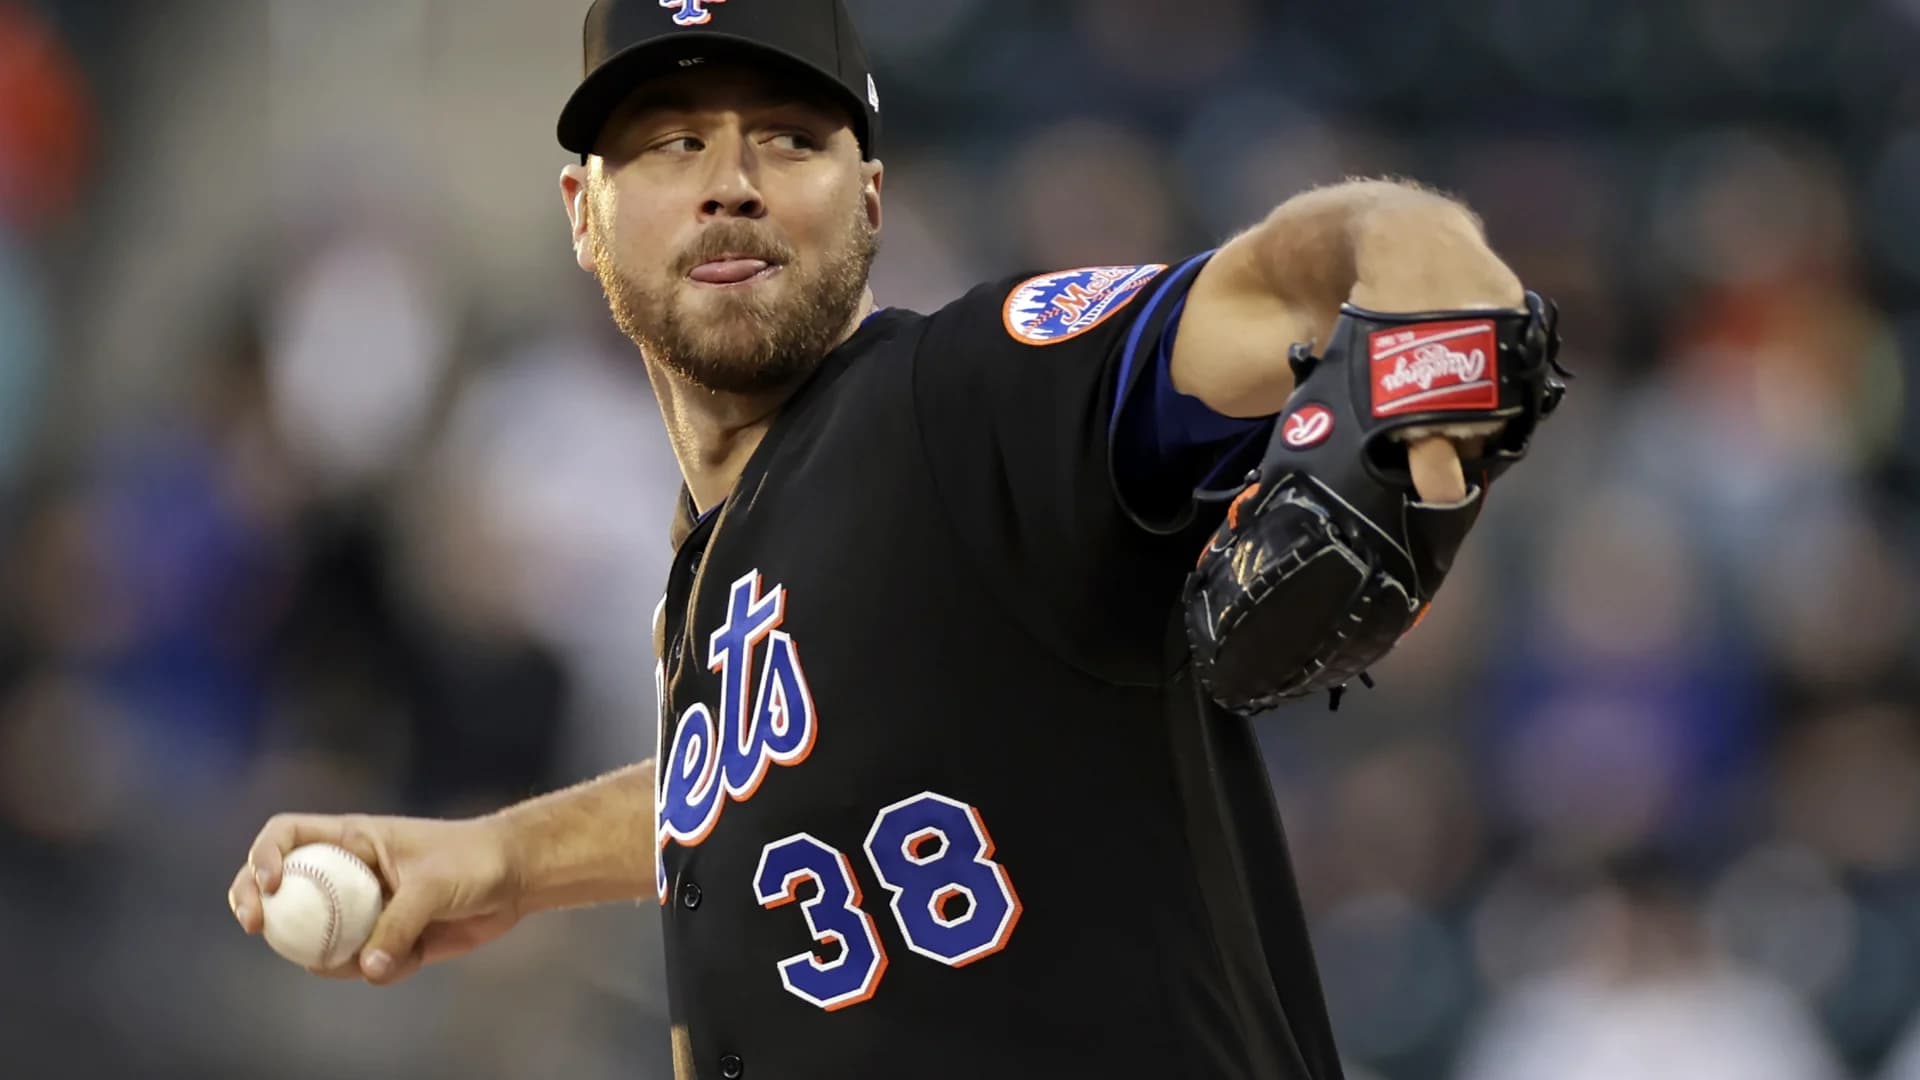 No-no-no-no-no! 5 Mets pitchers combine to no-hit Phillies